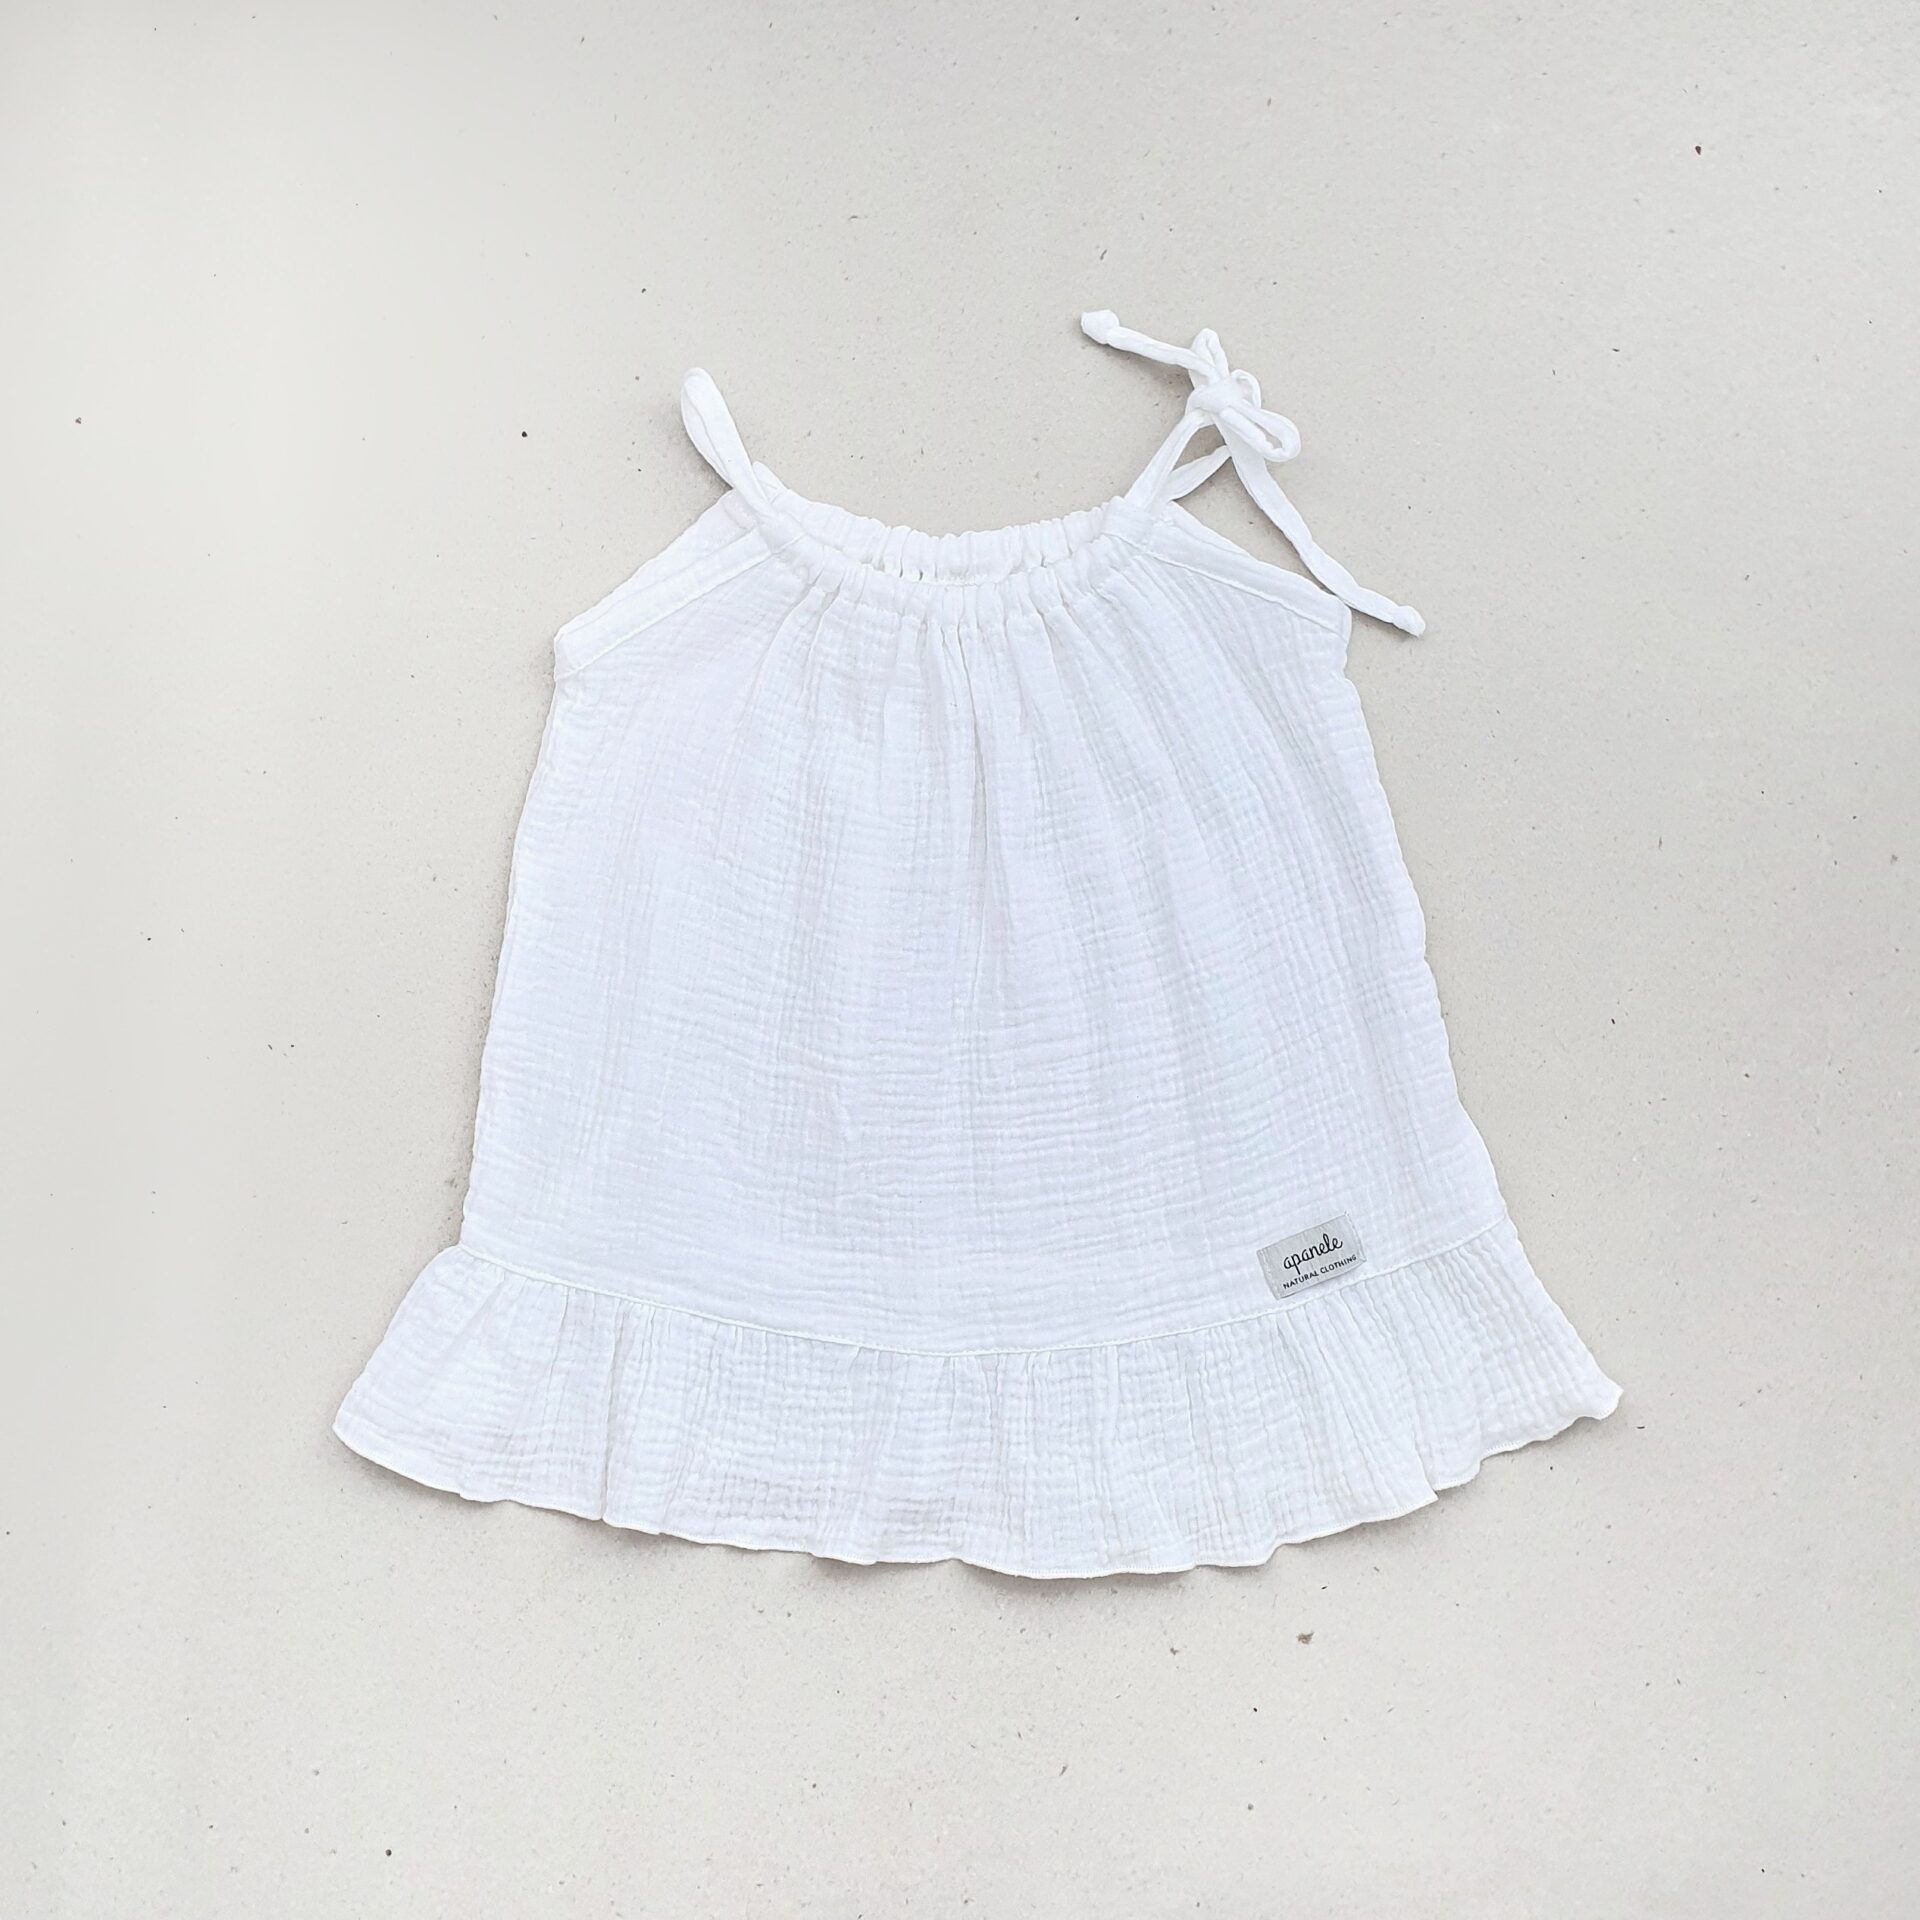 letnia, muślinowa sukienka na ramiączka dla dziewczynki w kolorze białym